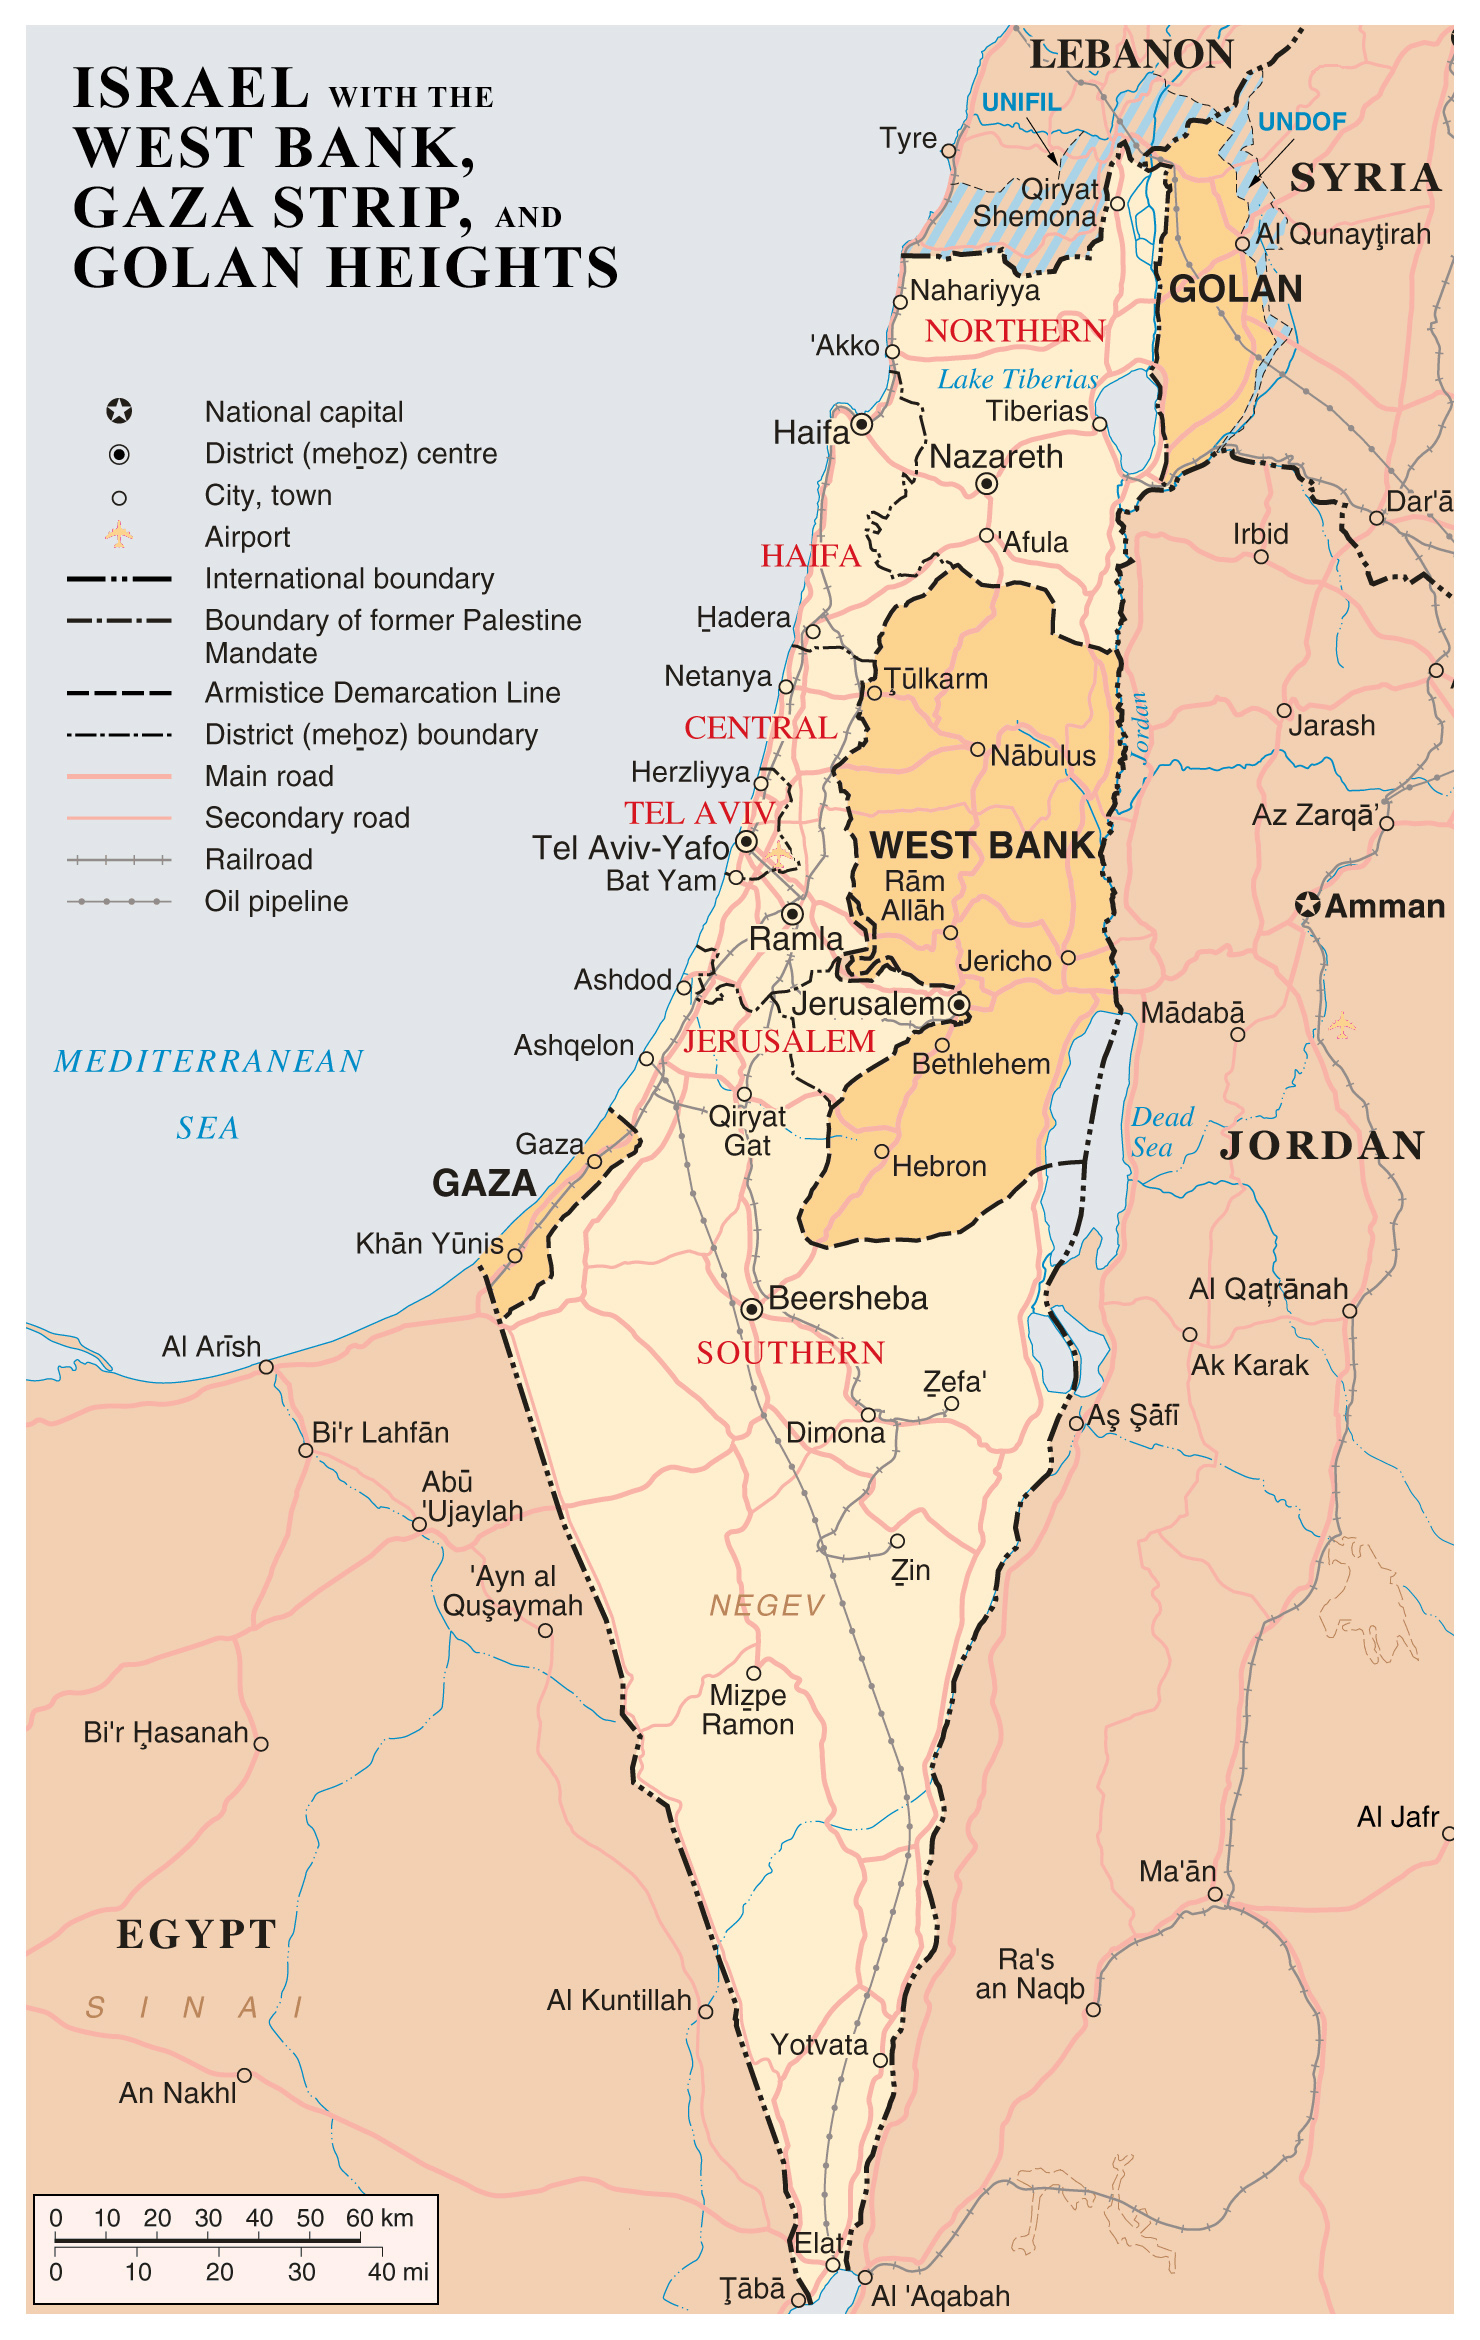 grande-detallado-mapa-de-israel-con-cisjordania-la-franja-de-gaza-y